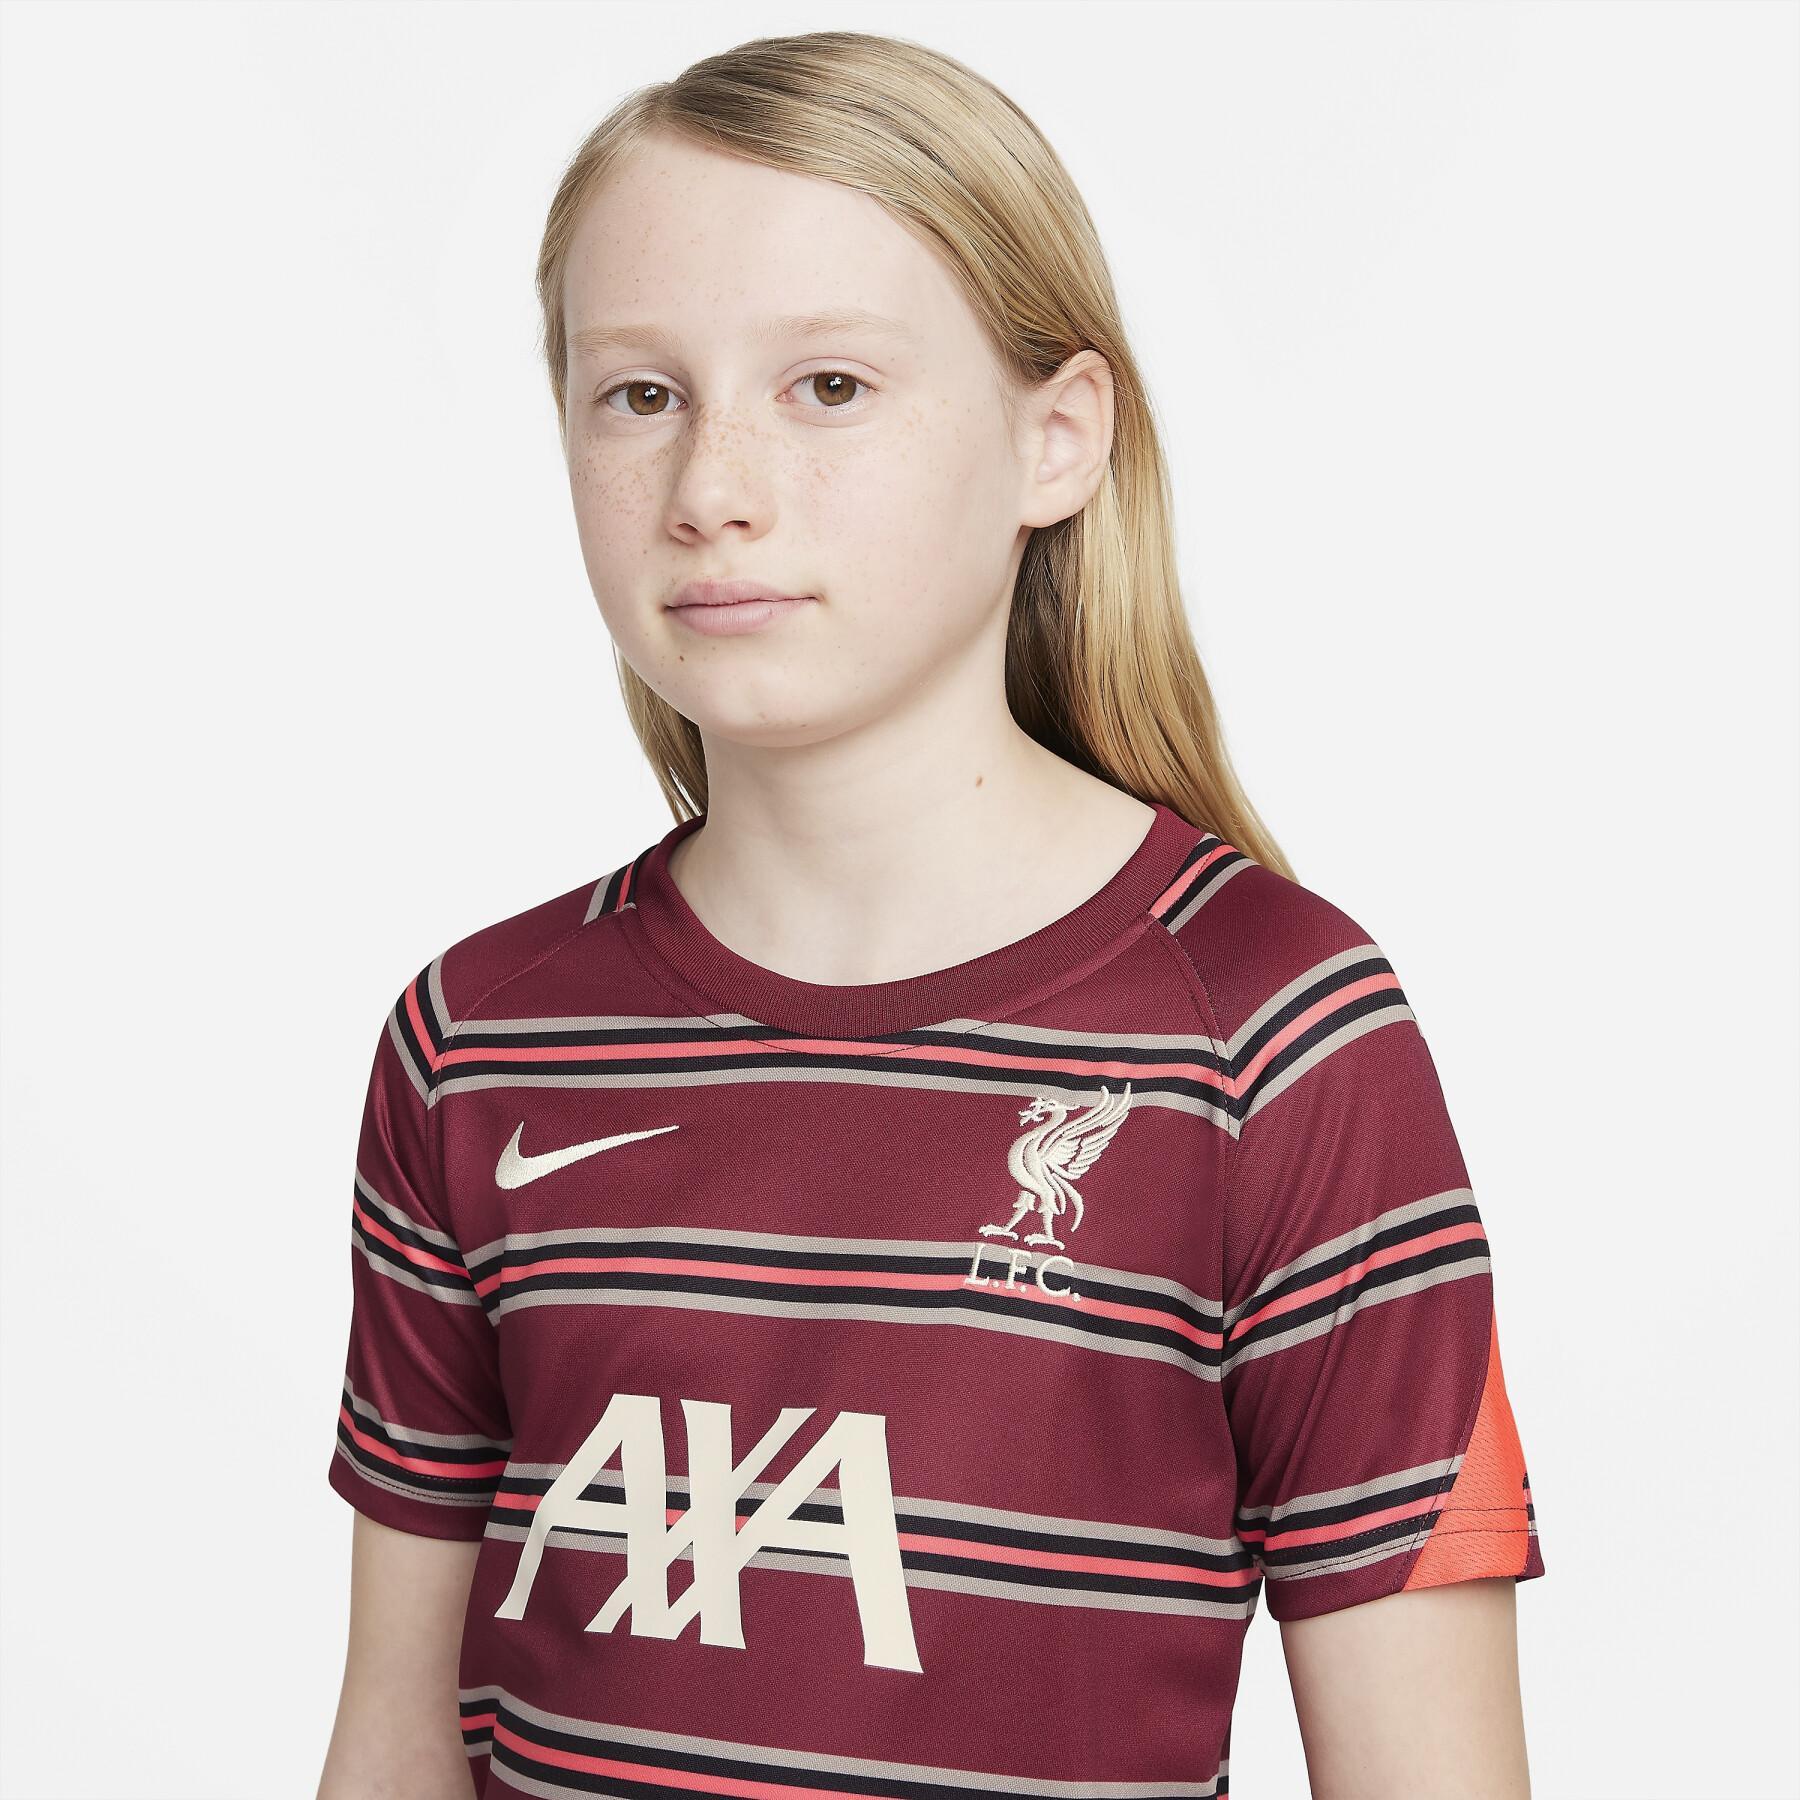 Camisola pré-confeccionada para crianças Liverpool FC 2021/22